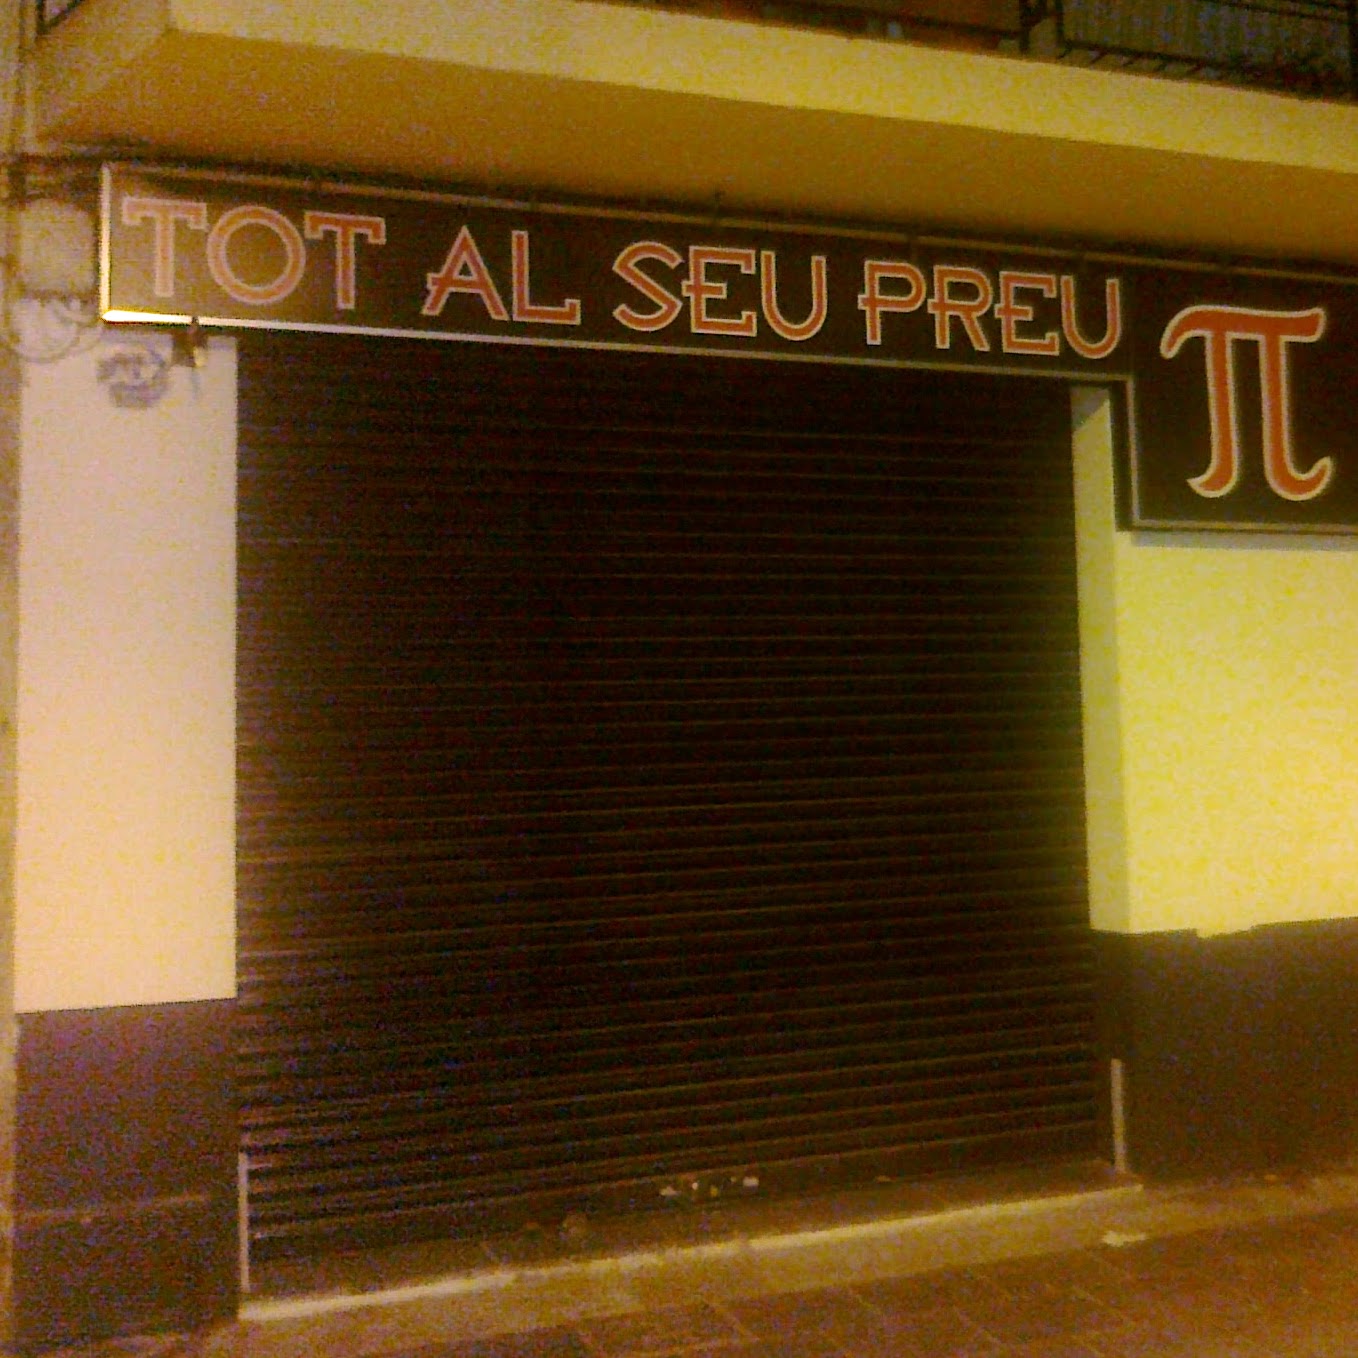 Persiana cerrada de una tienda, cuyo cartel dice Tot al seu preu - Pi (con el símbolo griego)